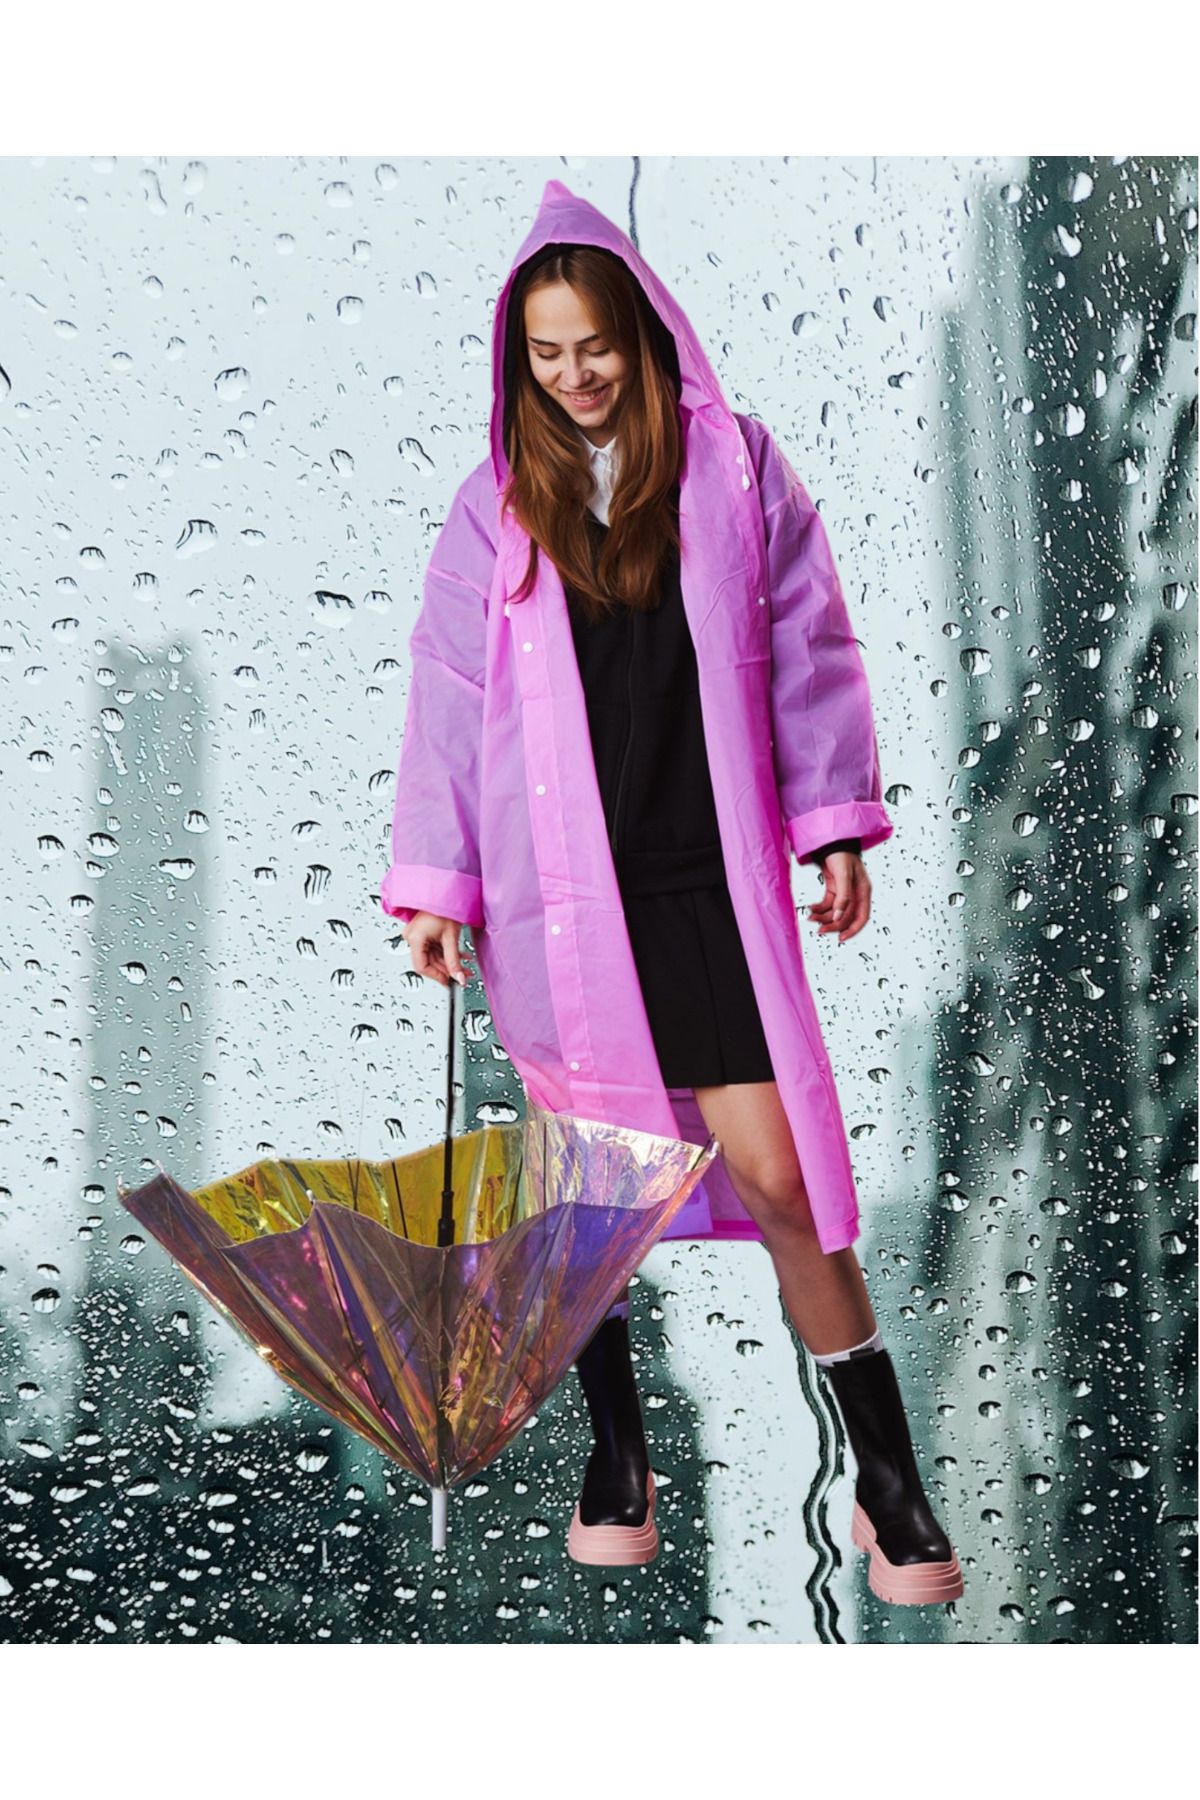 Shopiolog Kadın Erkek Unisex Yağmurluk Kapüşonlu Çıtçıtlı Eva Siyah Yağmurluk